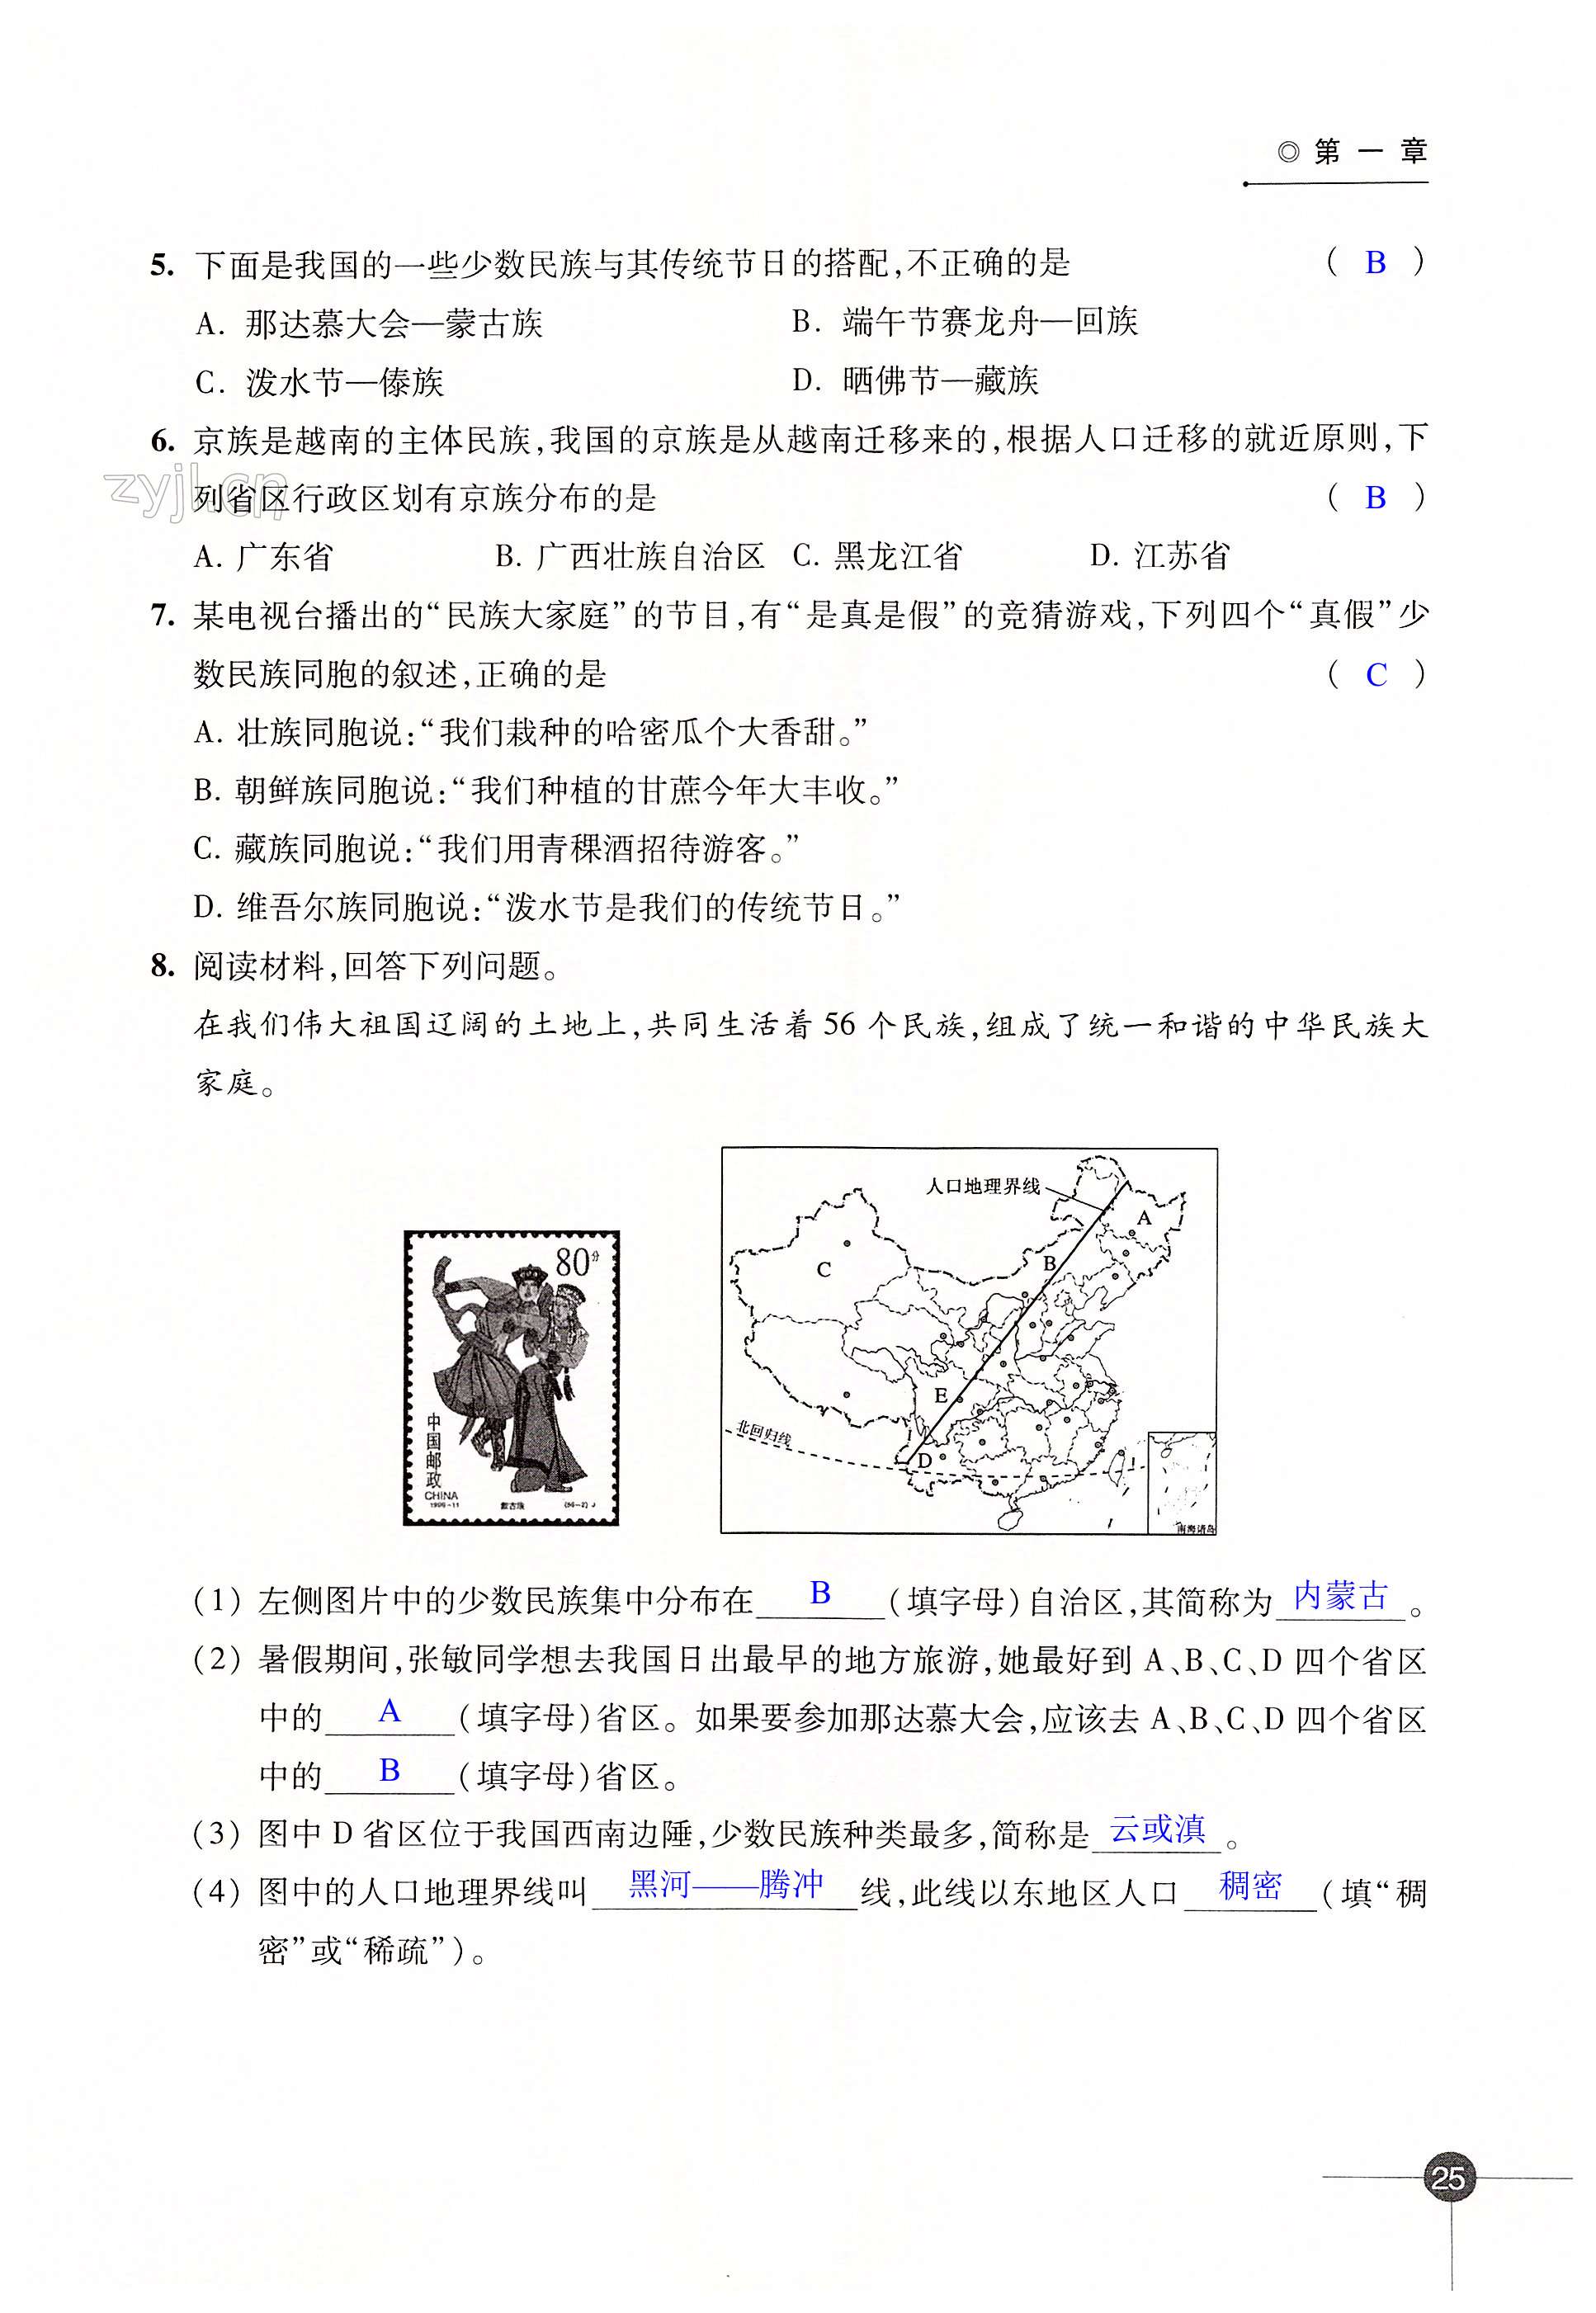 第一章 中国的疆域与人口 - 第25页